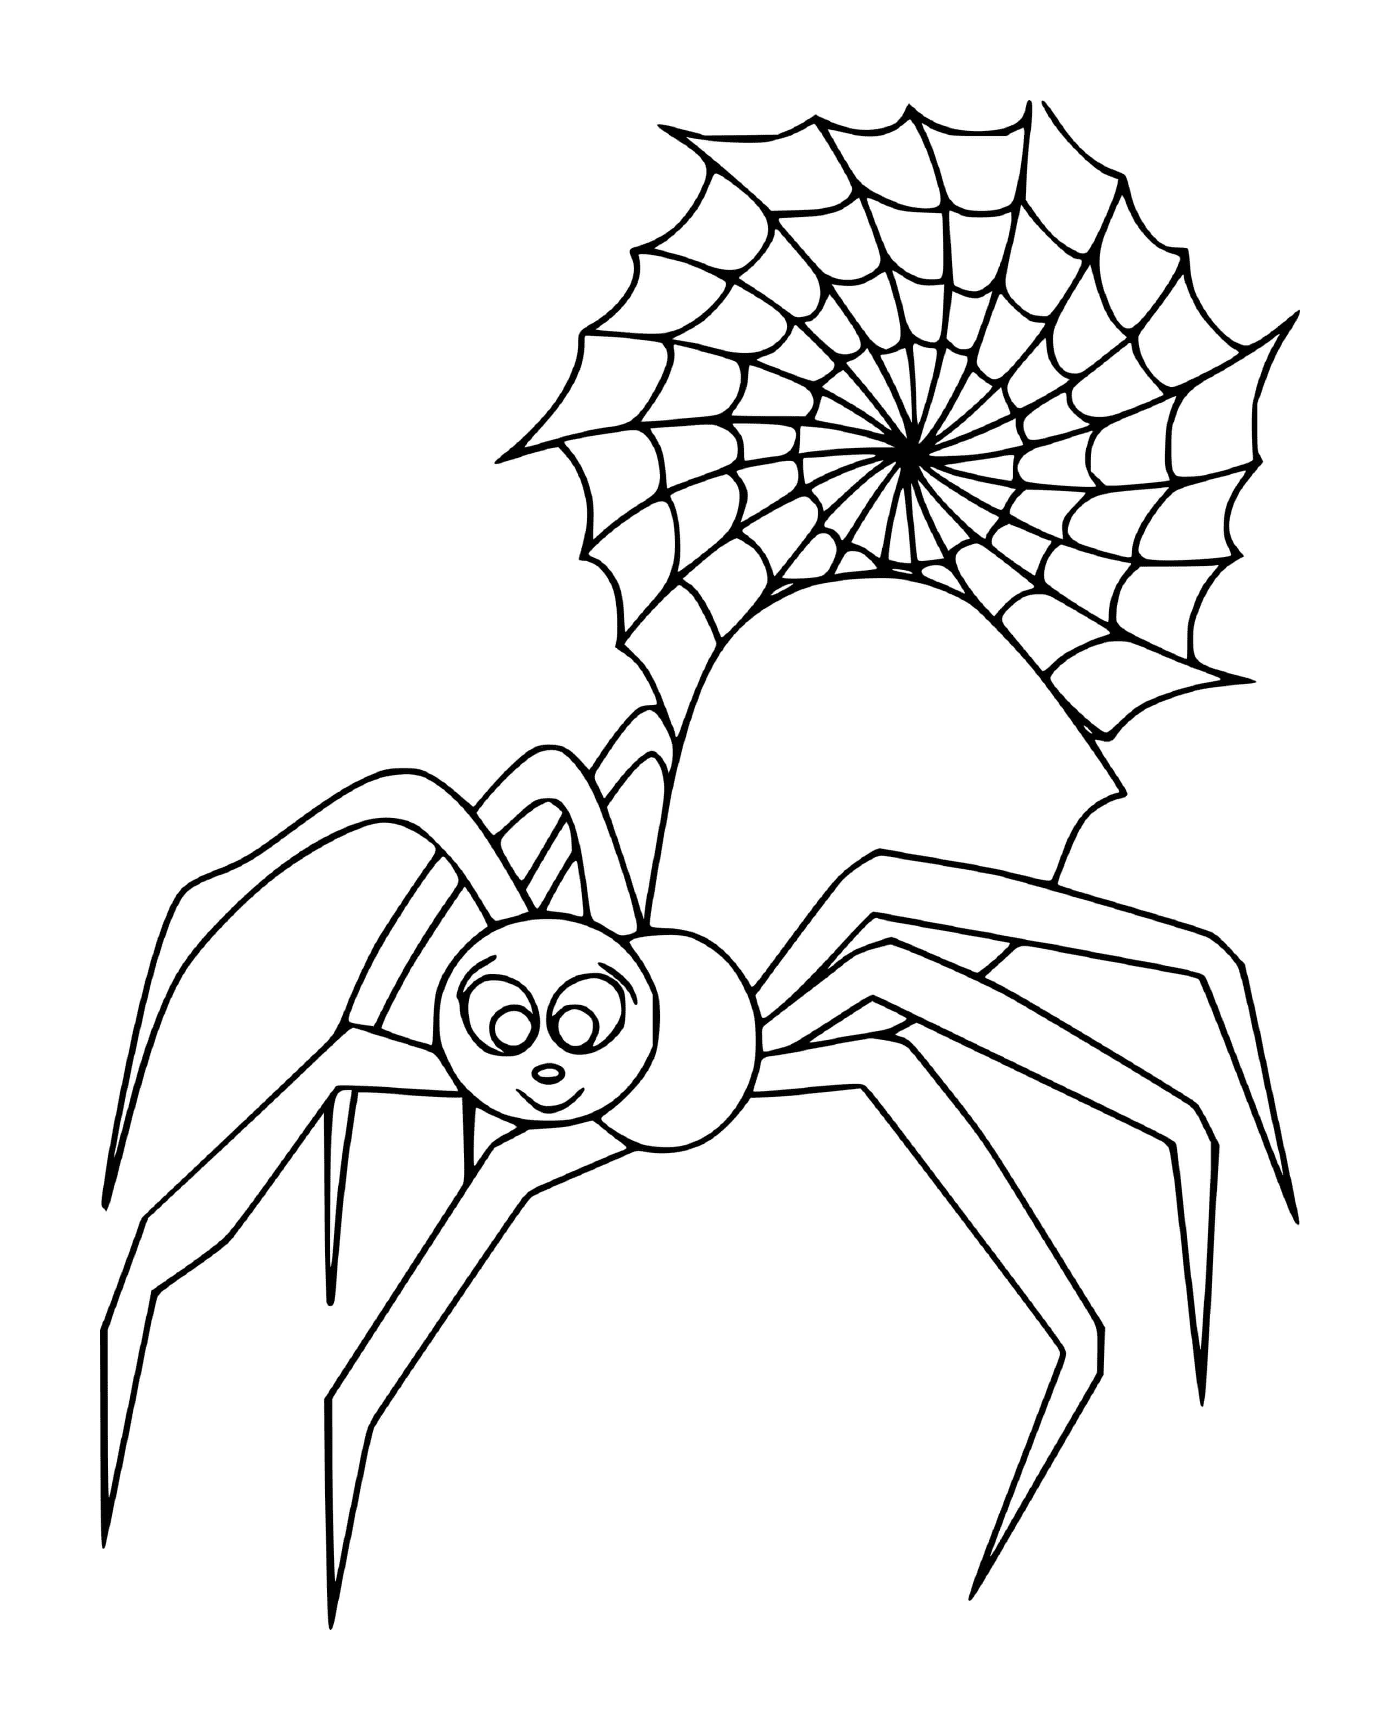  Eine riesige, niedliche Spinne 